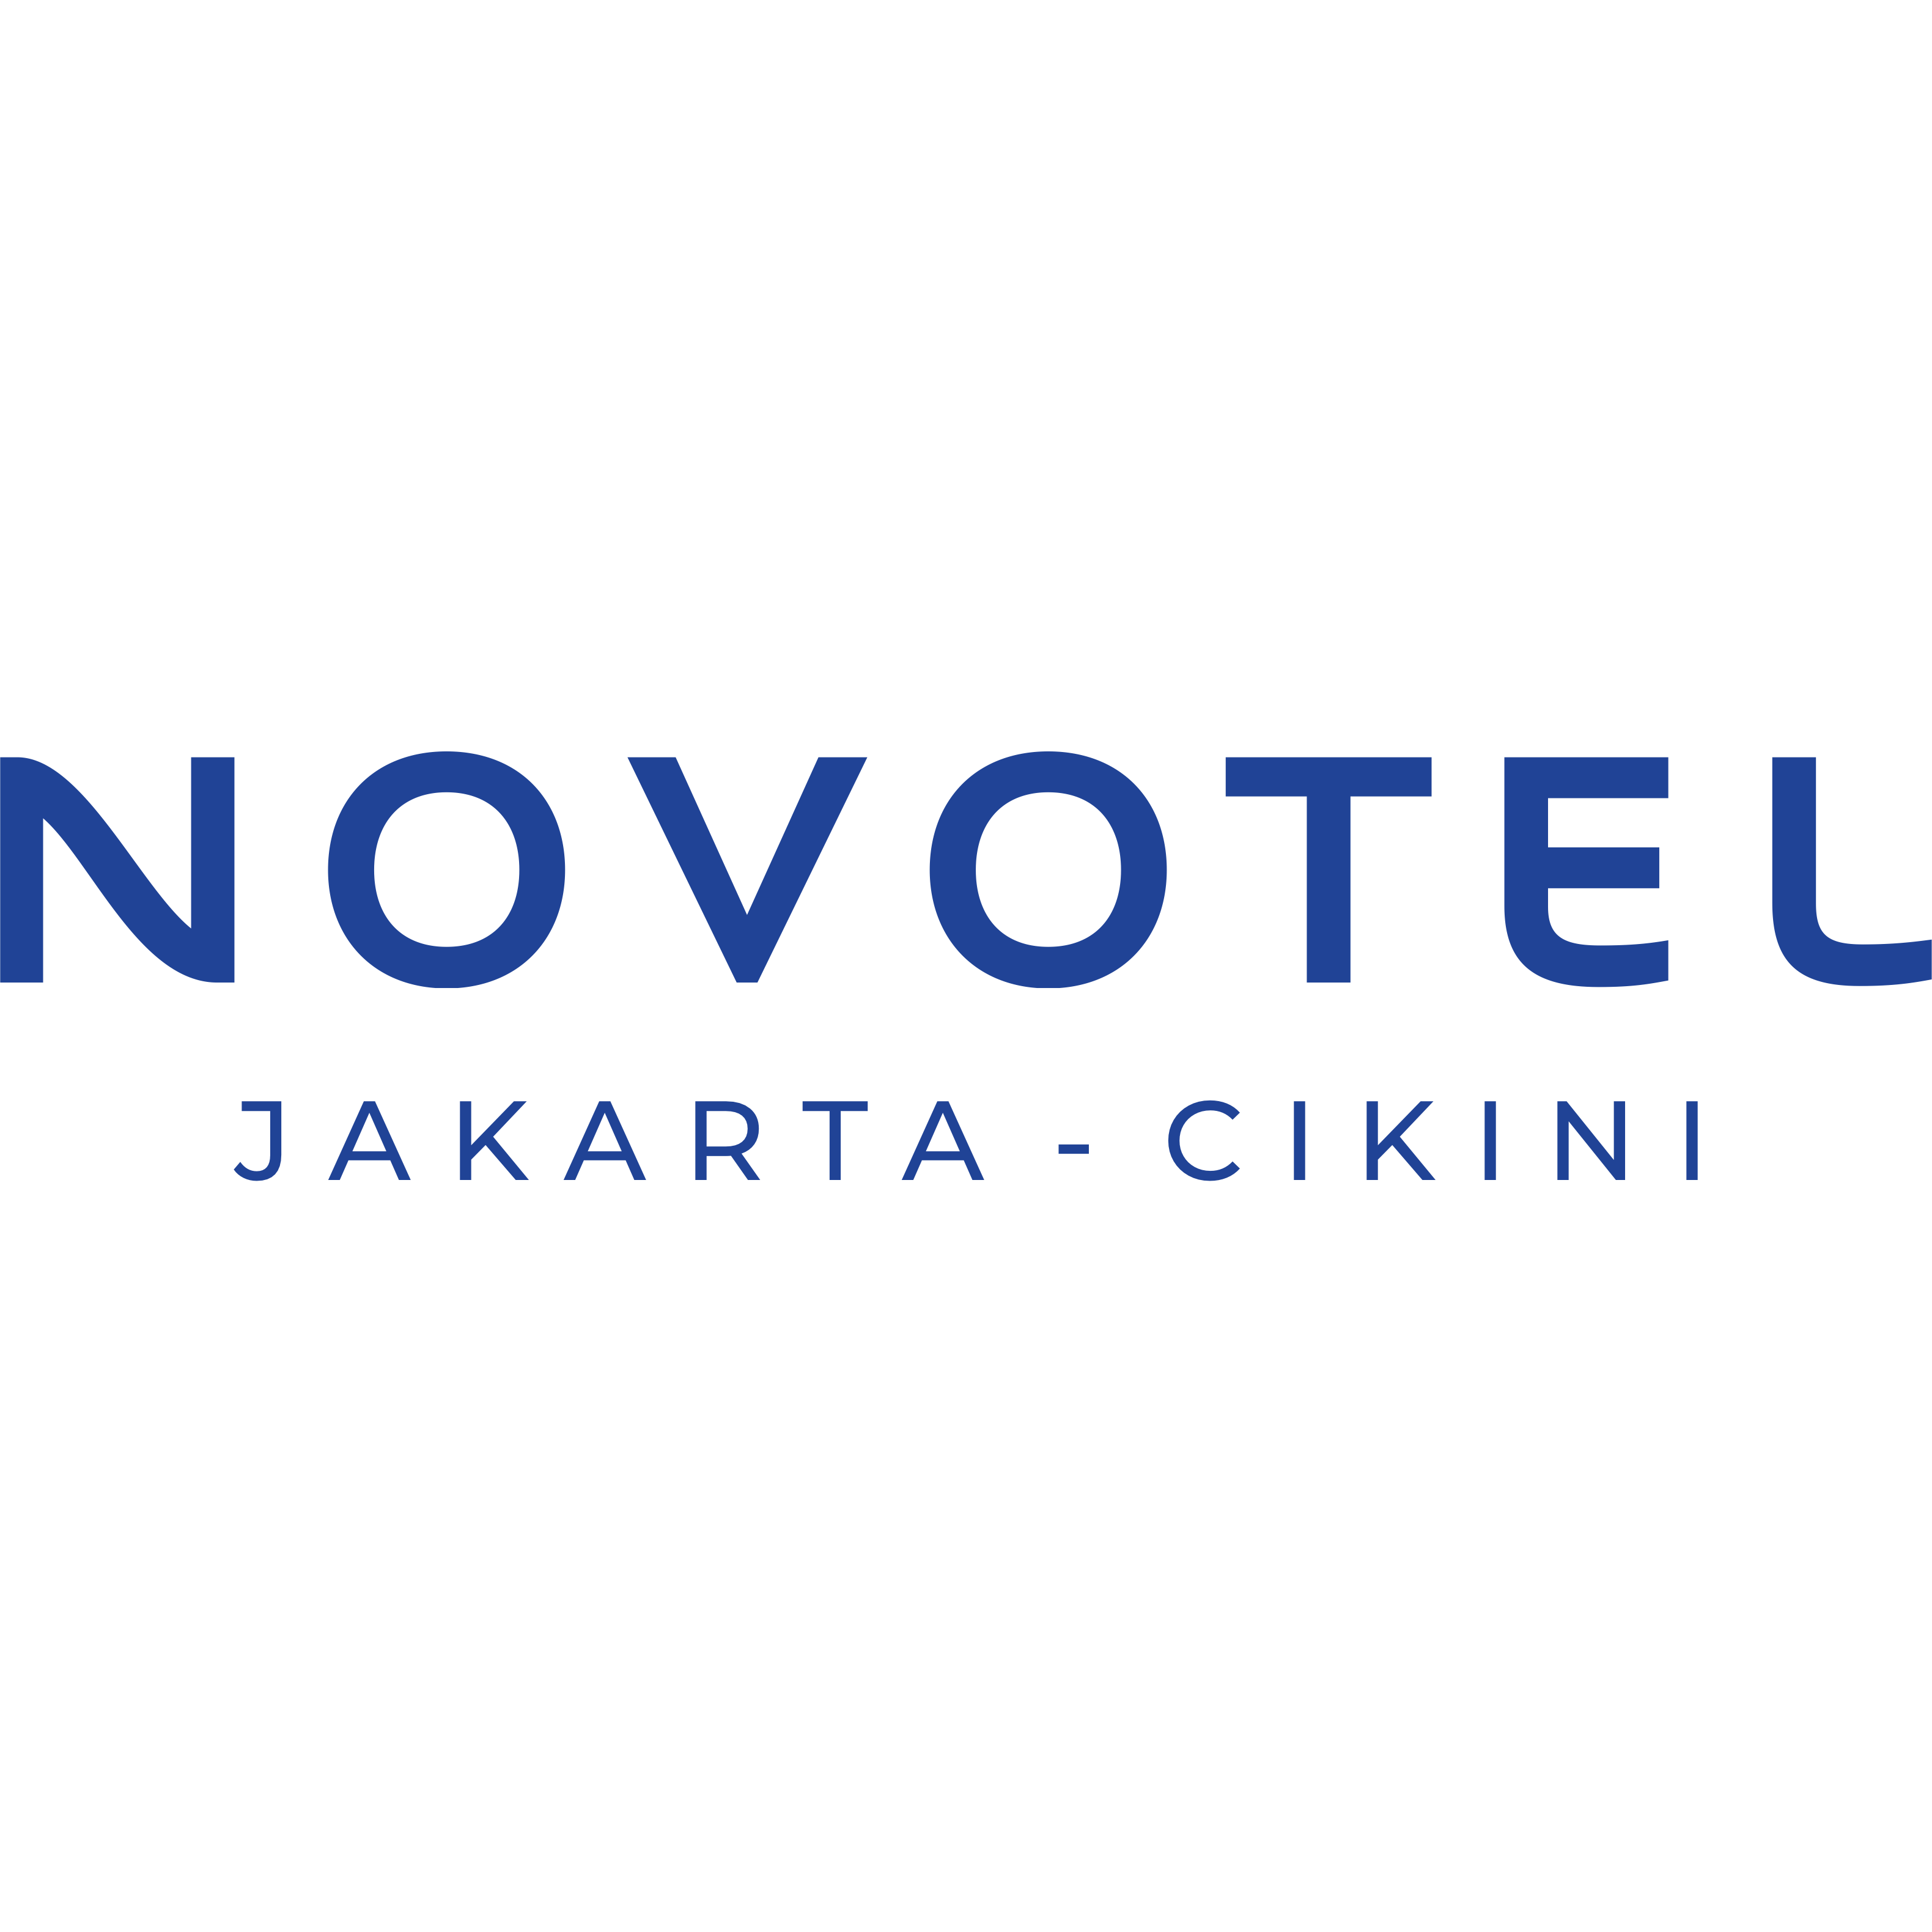 Novotel Jakarta Cikini